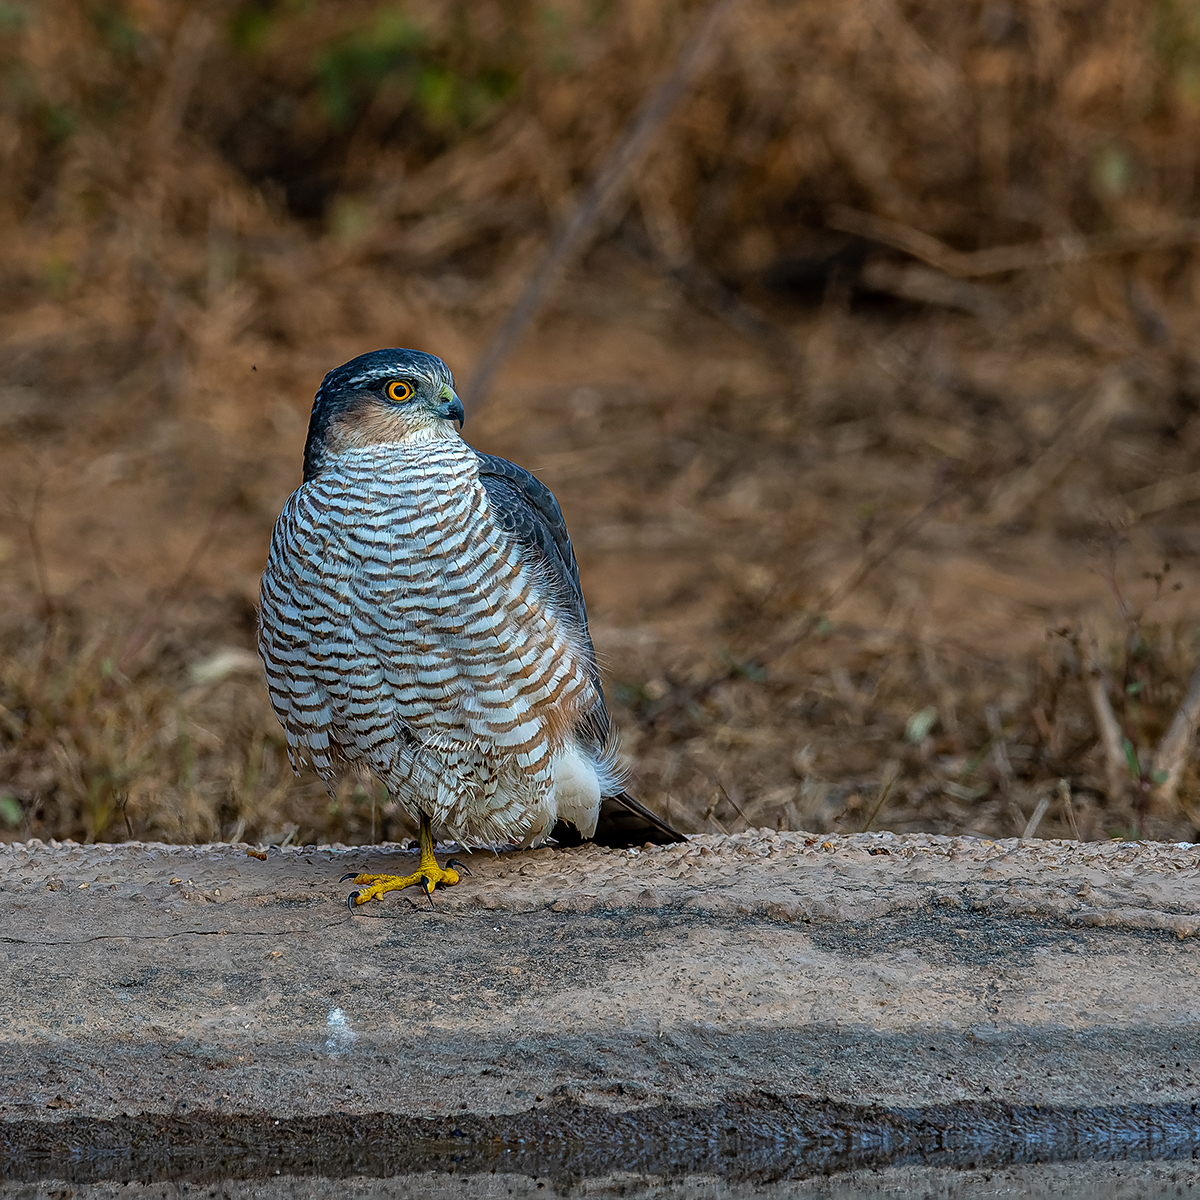 A Female Eurasian Sparrowhawk at Jaipur, Rajasthan #birdingphotography #beautifulbirds #world_bestnature #Birdwatching #BirdPhotography #photographylovers #birding #photoMode #TwitterNatureCommunity #BBCWildlifePOTD #ThePhotoHour #IndiAves #IndiWild @natgeoindia @NatGeoPhotos